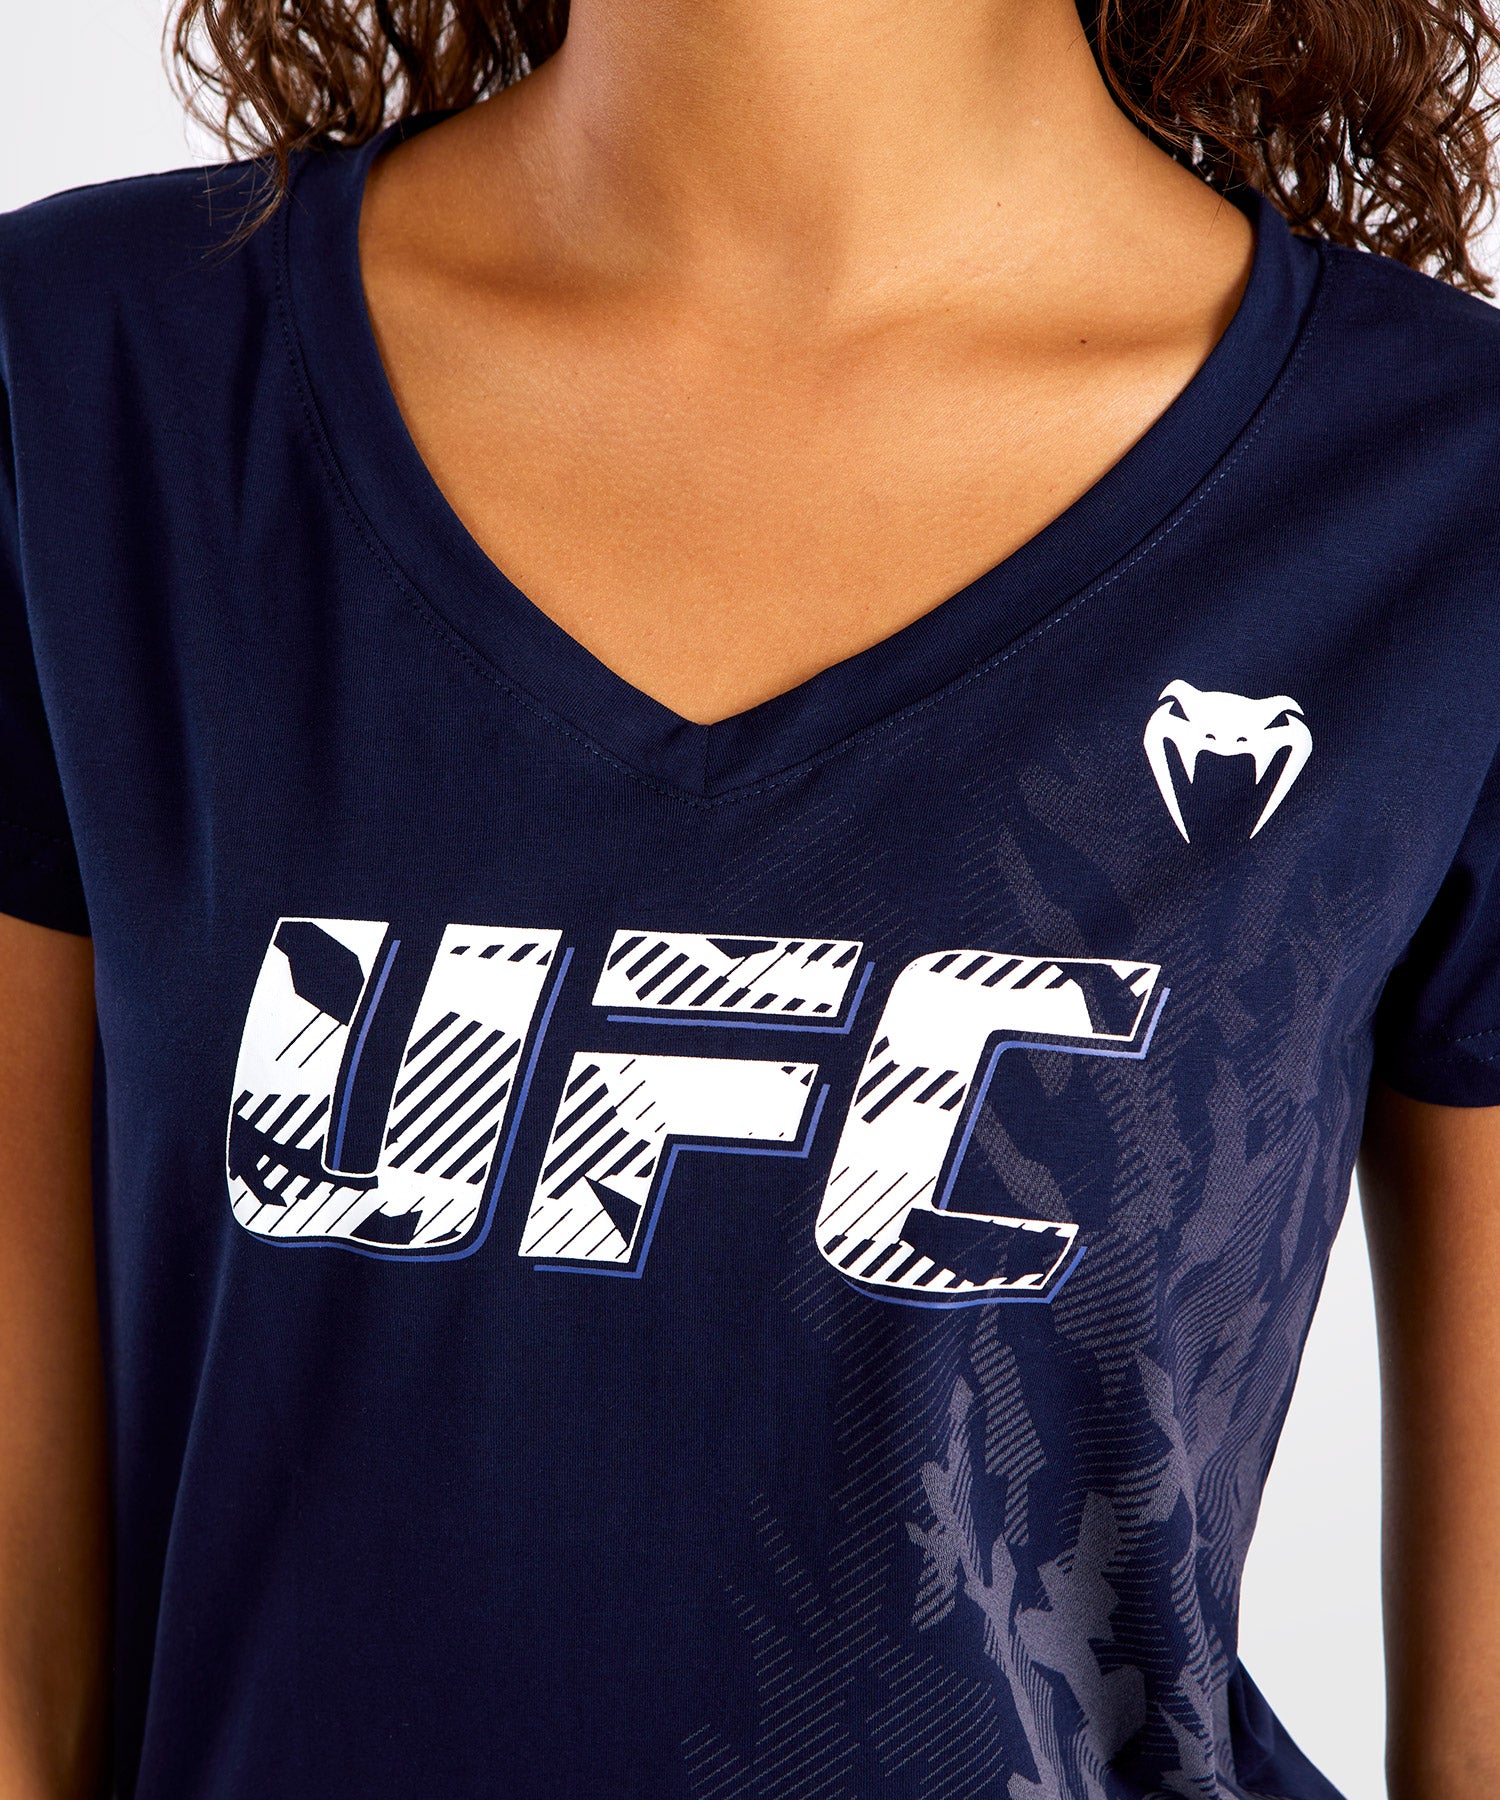 T-shirt Manches Courtes Femme UFC Venum Authentic Fight Week